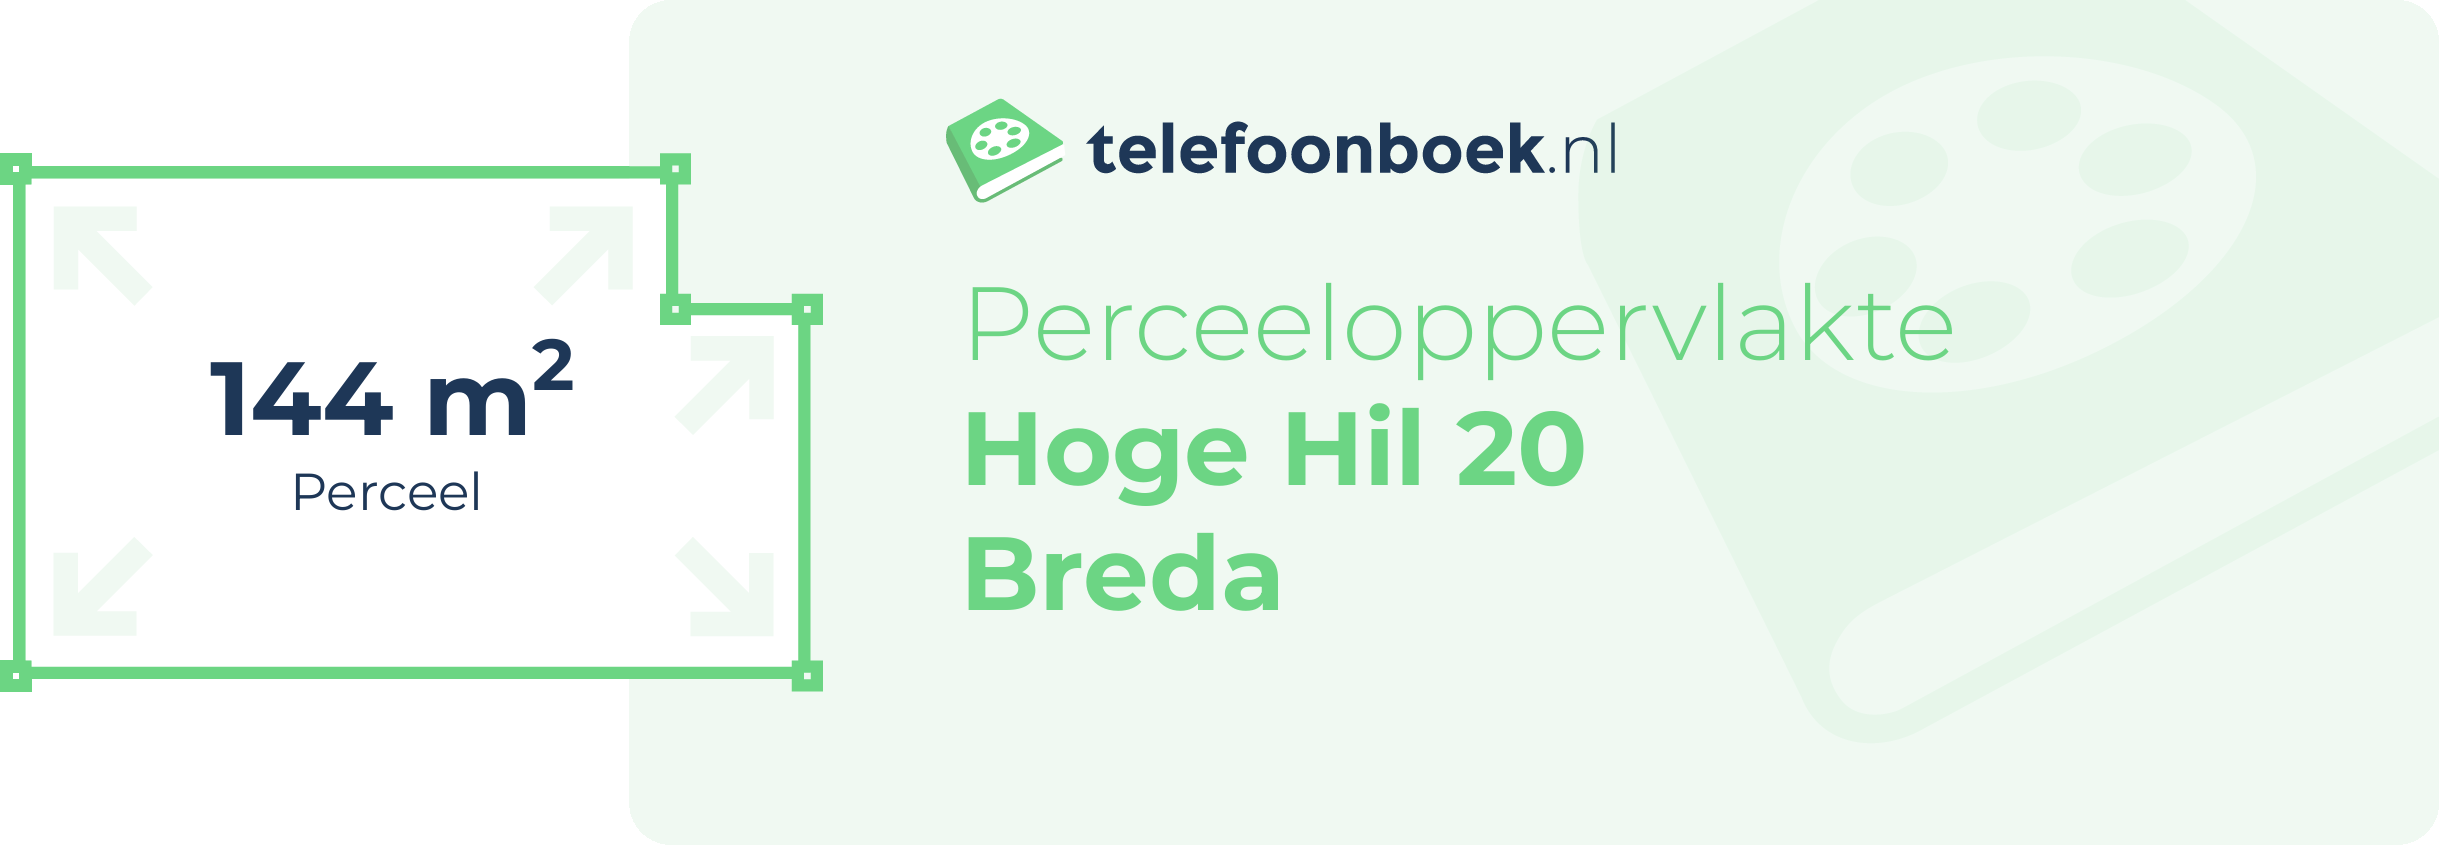 Perceeloppervlakte Hoge Hil 20 Breda